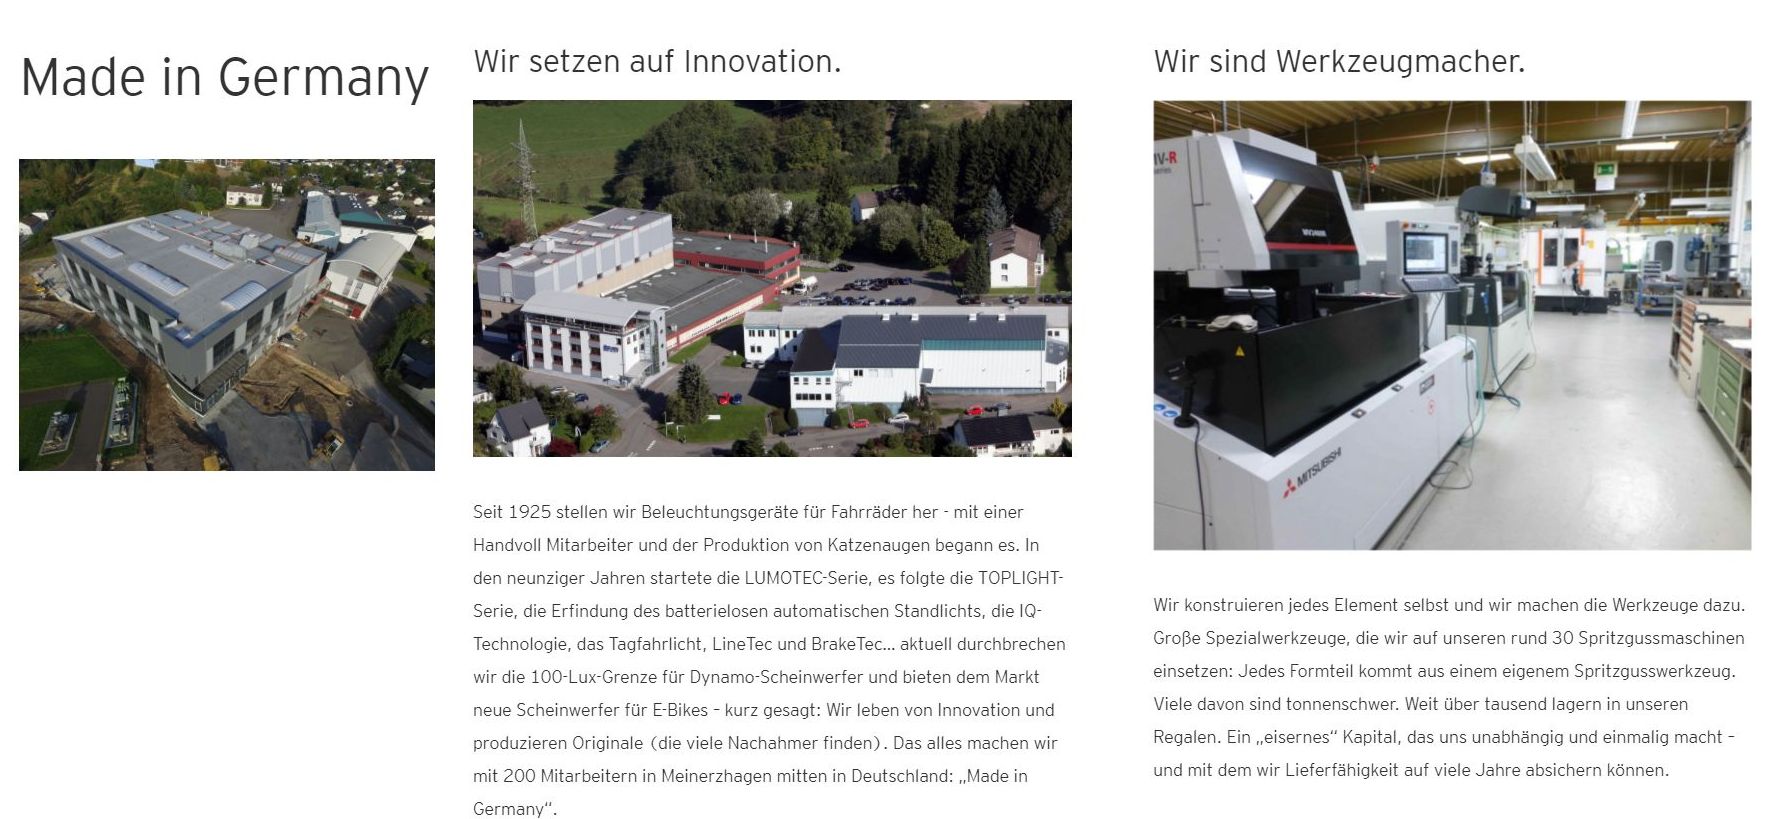 Auf der Webseite von Busch und Müller finden sich zahlreiche Informationen zur Firma selbst sowie Fahrradbeleuchtung im Allgemeinen